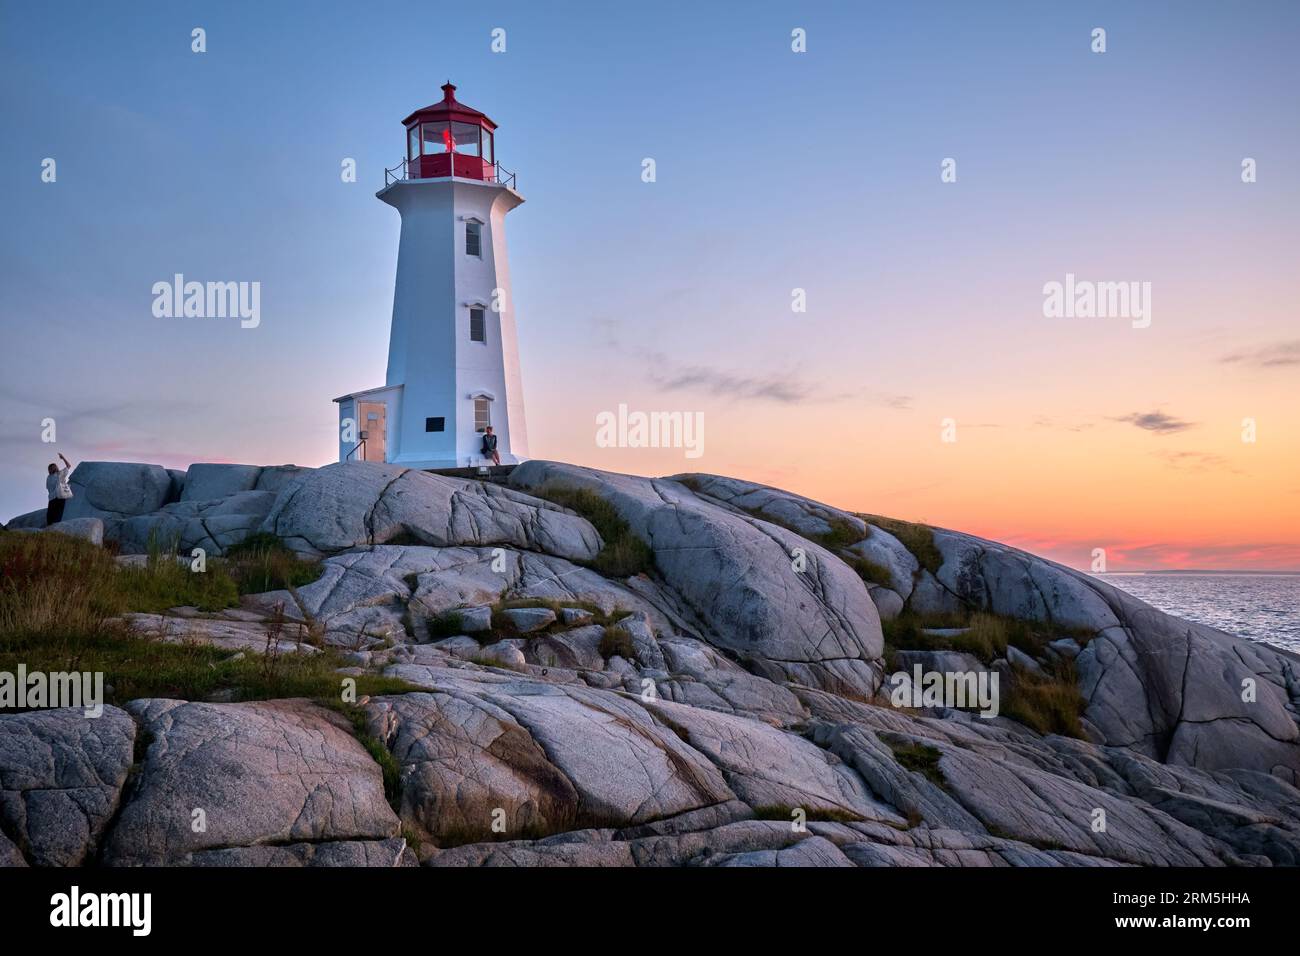 Visitors enjoying the sunset at Peggys Cove Nova Scotia. Stock Photo